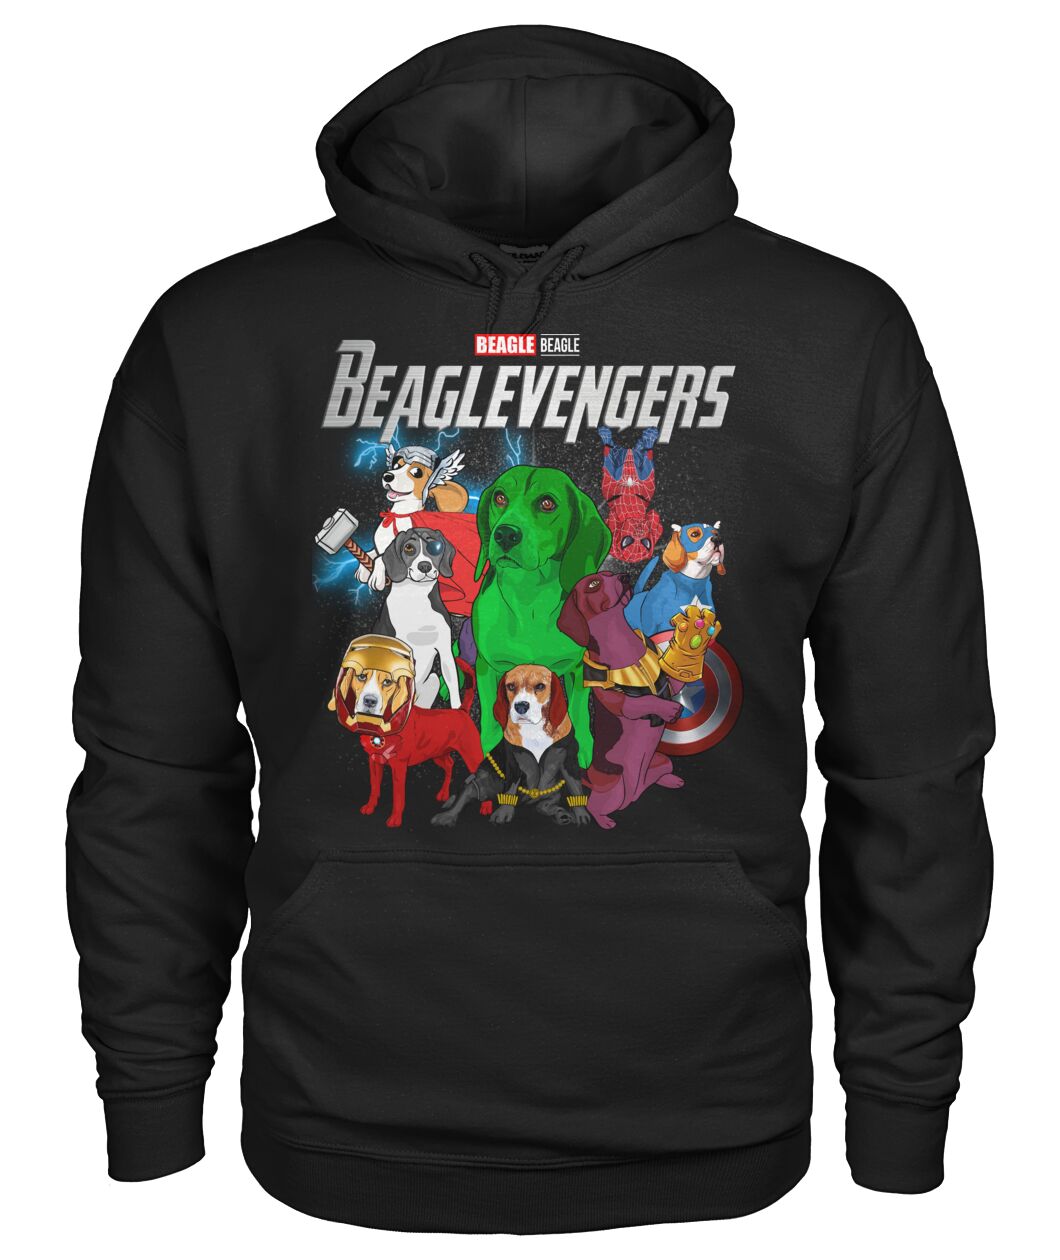 Beaglevengers 3D Hoodie, Shirt 8